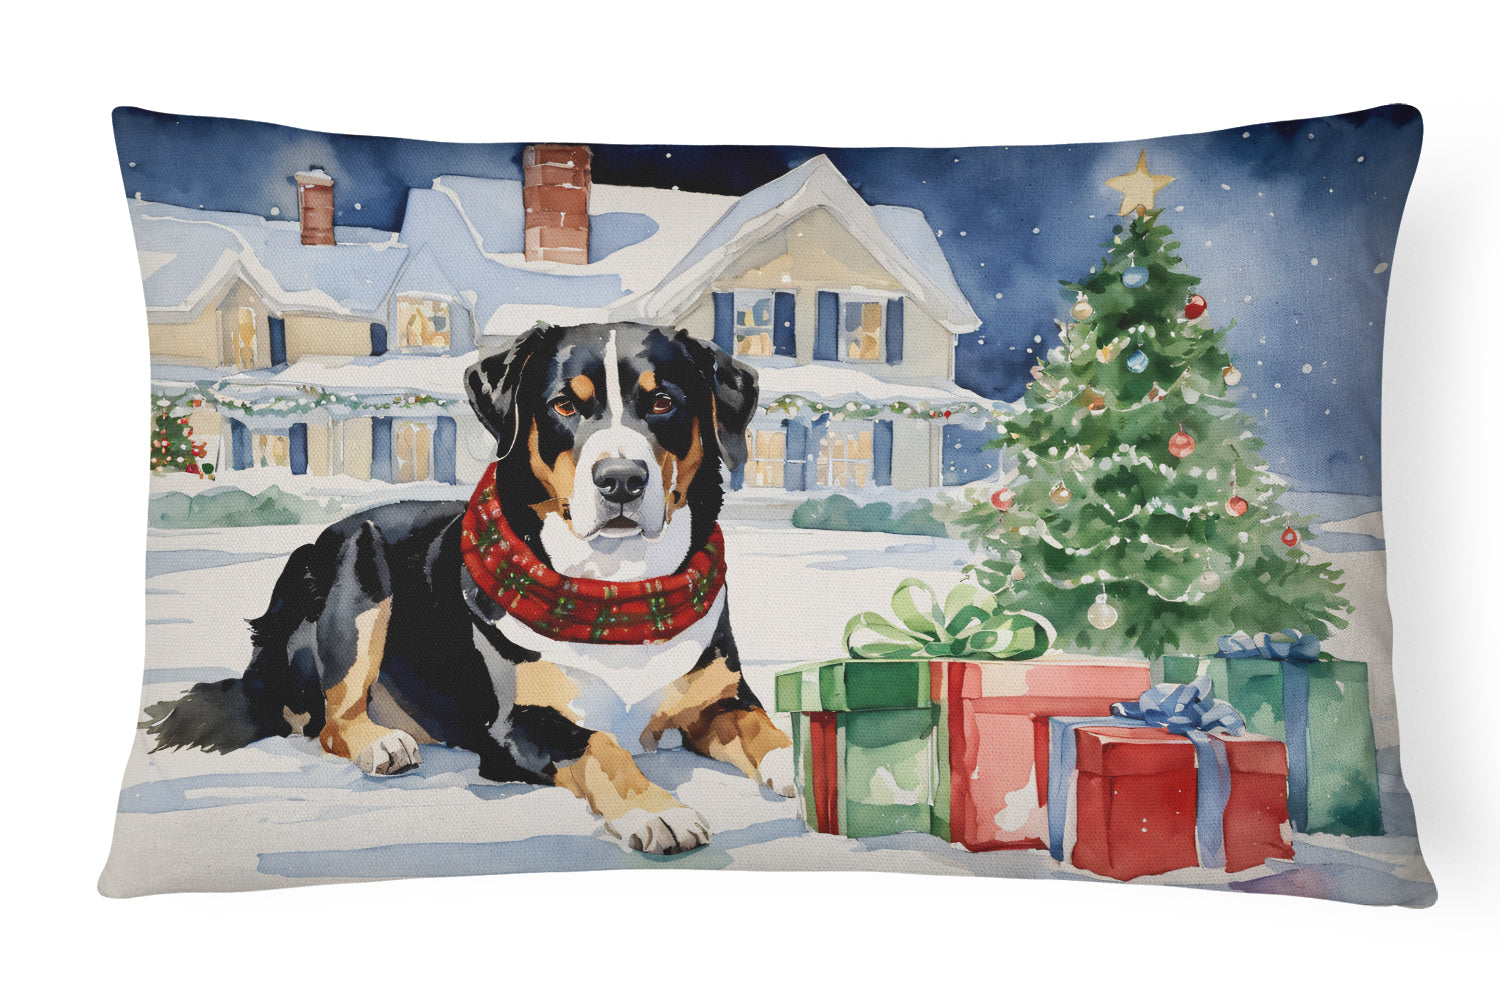 Buy this Entlebucher Mountain Dog Cozy Christmas Throw Pillow